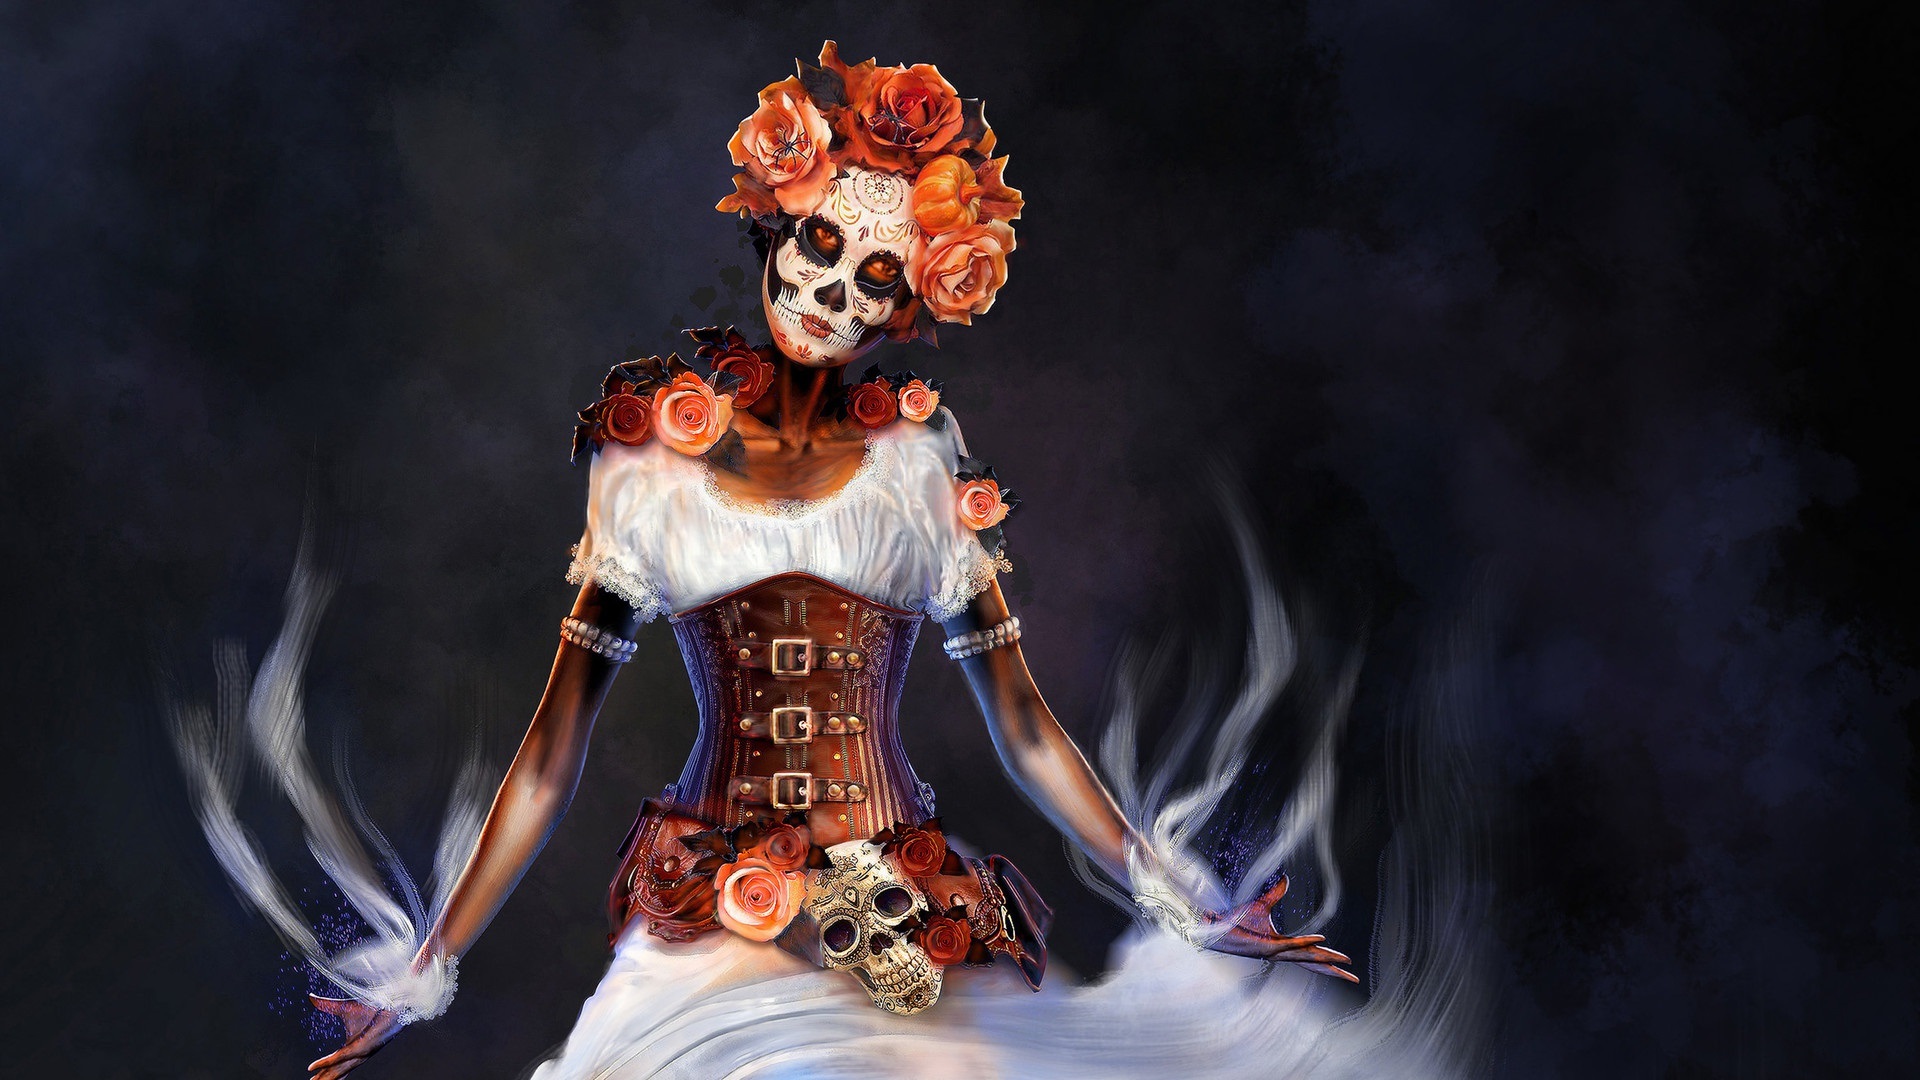 artistic, sugar skull, corset, day of the dead, fantasy, steampunk